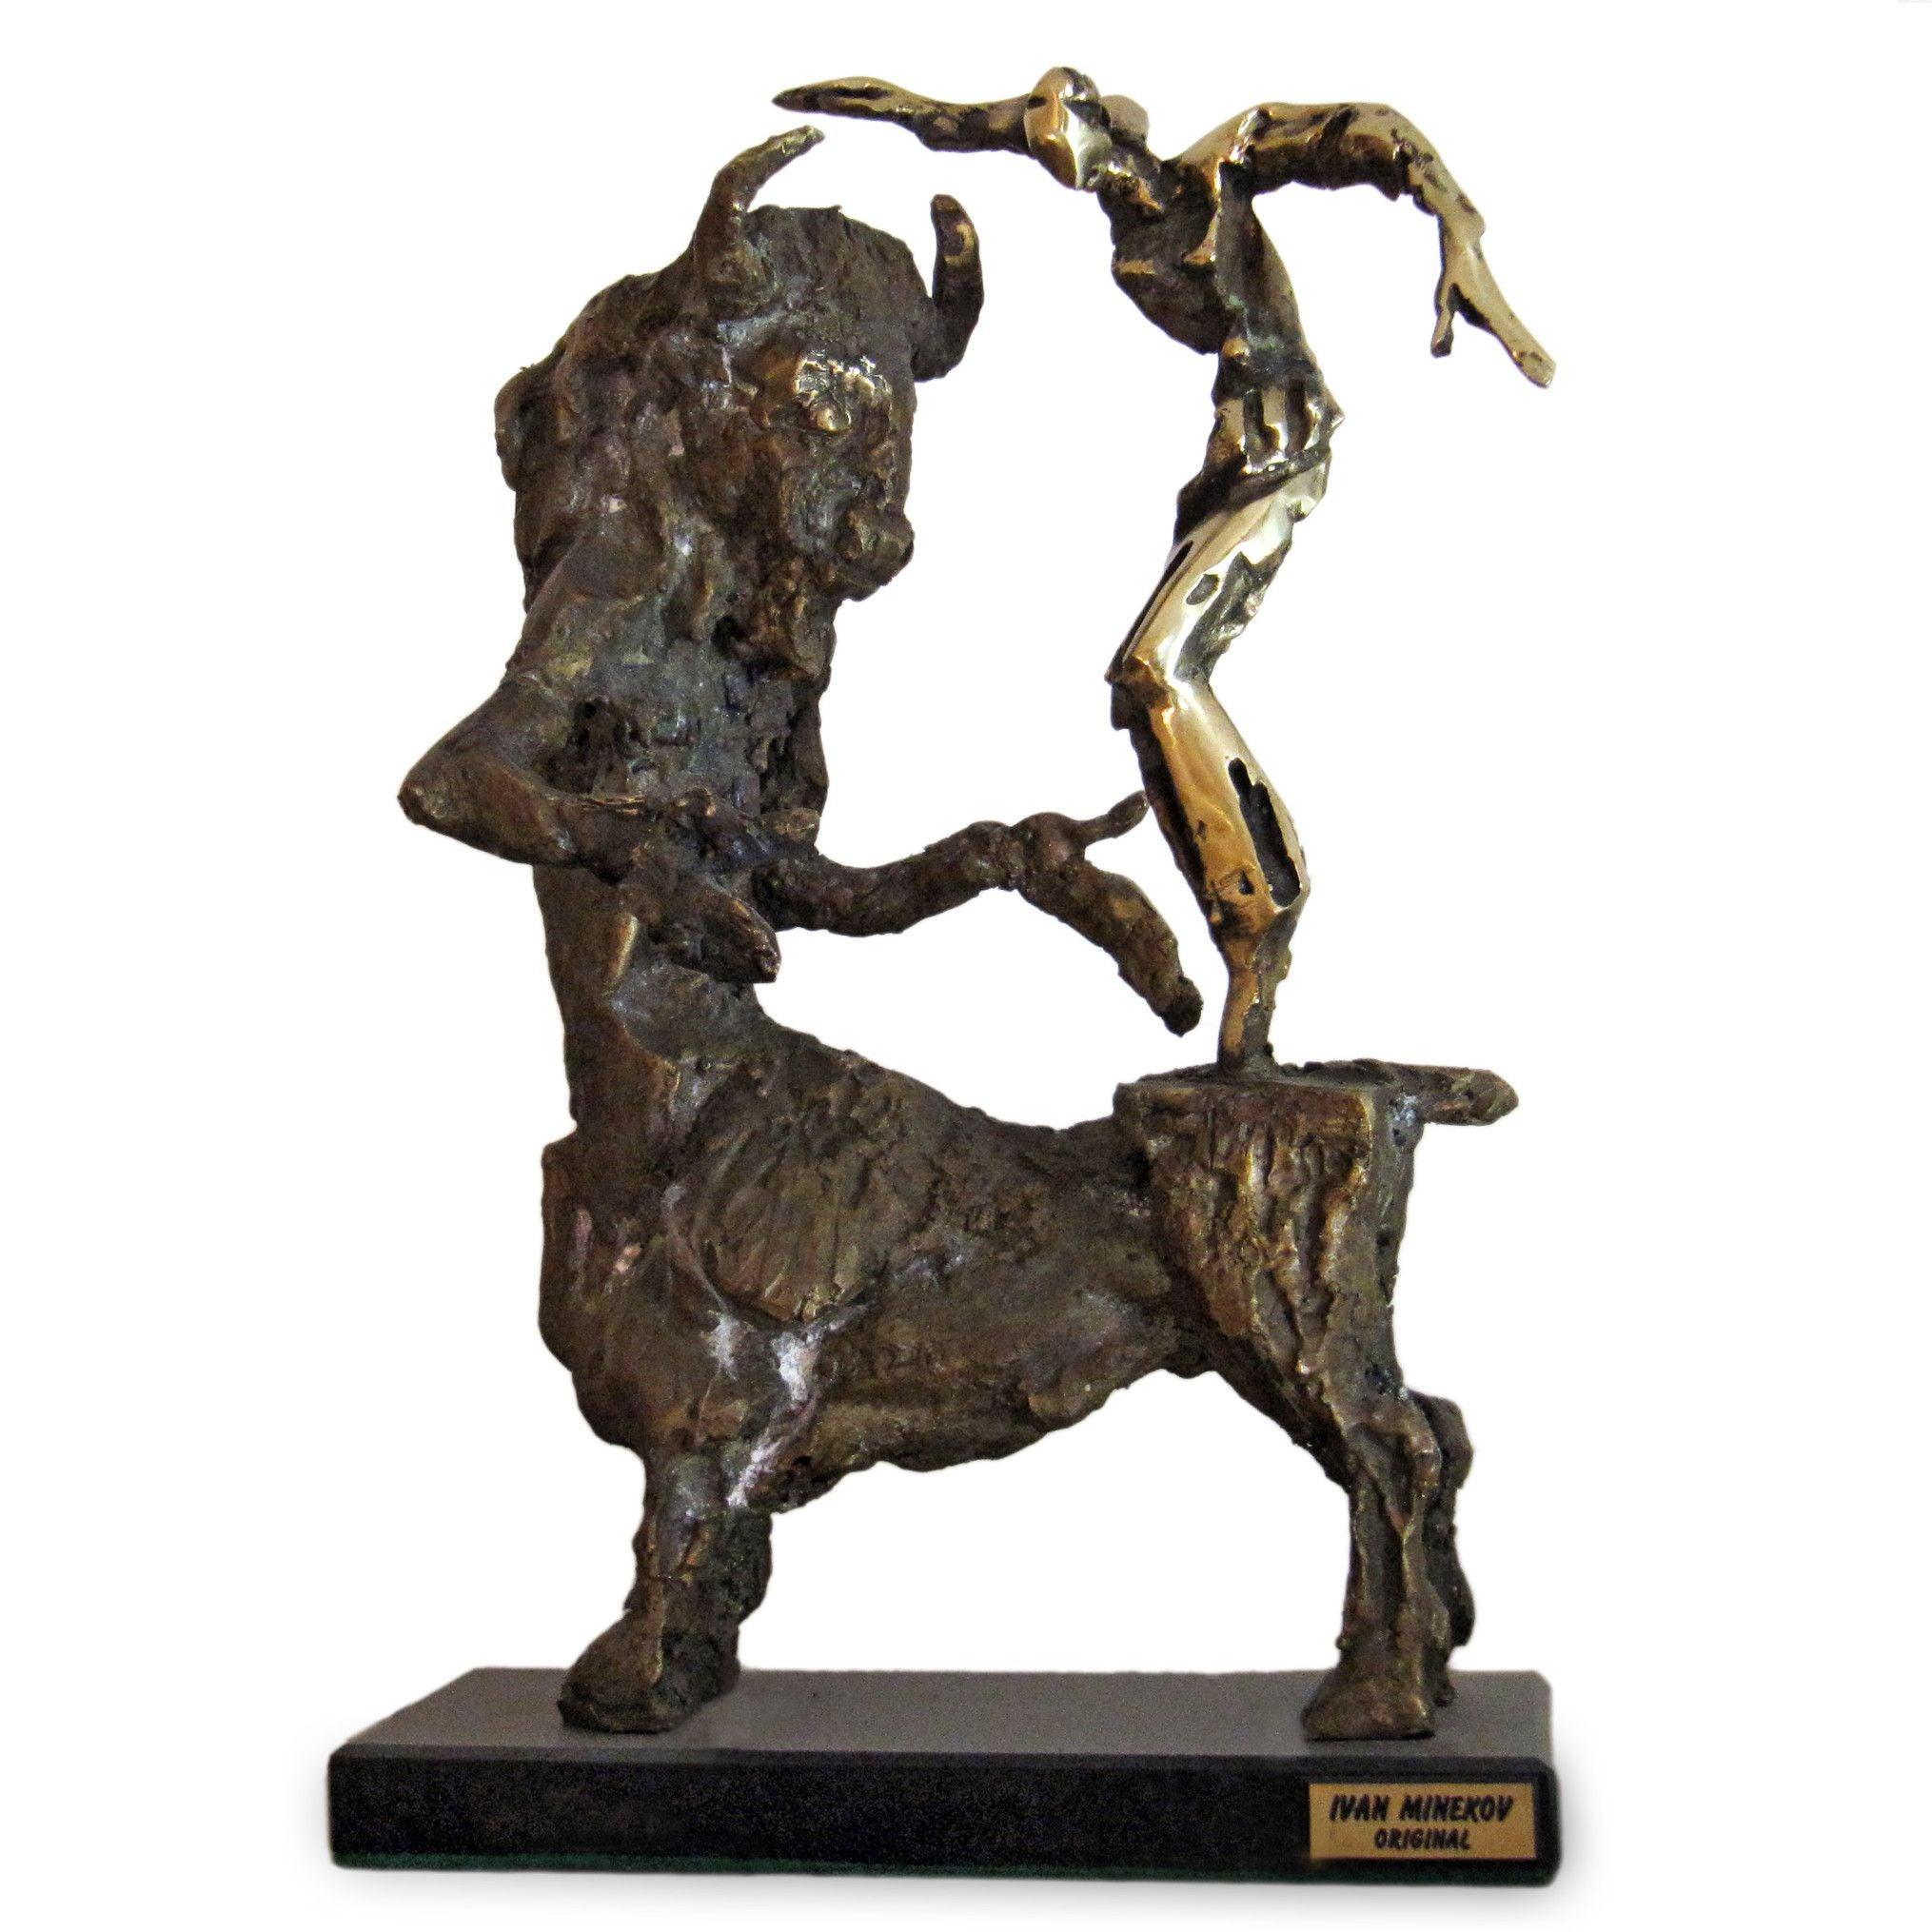 Theseus fighting the Minotaur, Bronze Sculpture by Ivan Minekov - Lantern Space